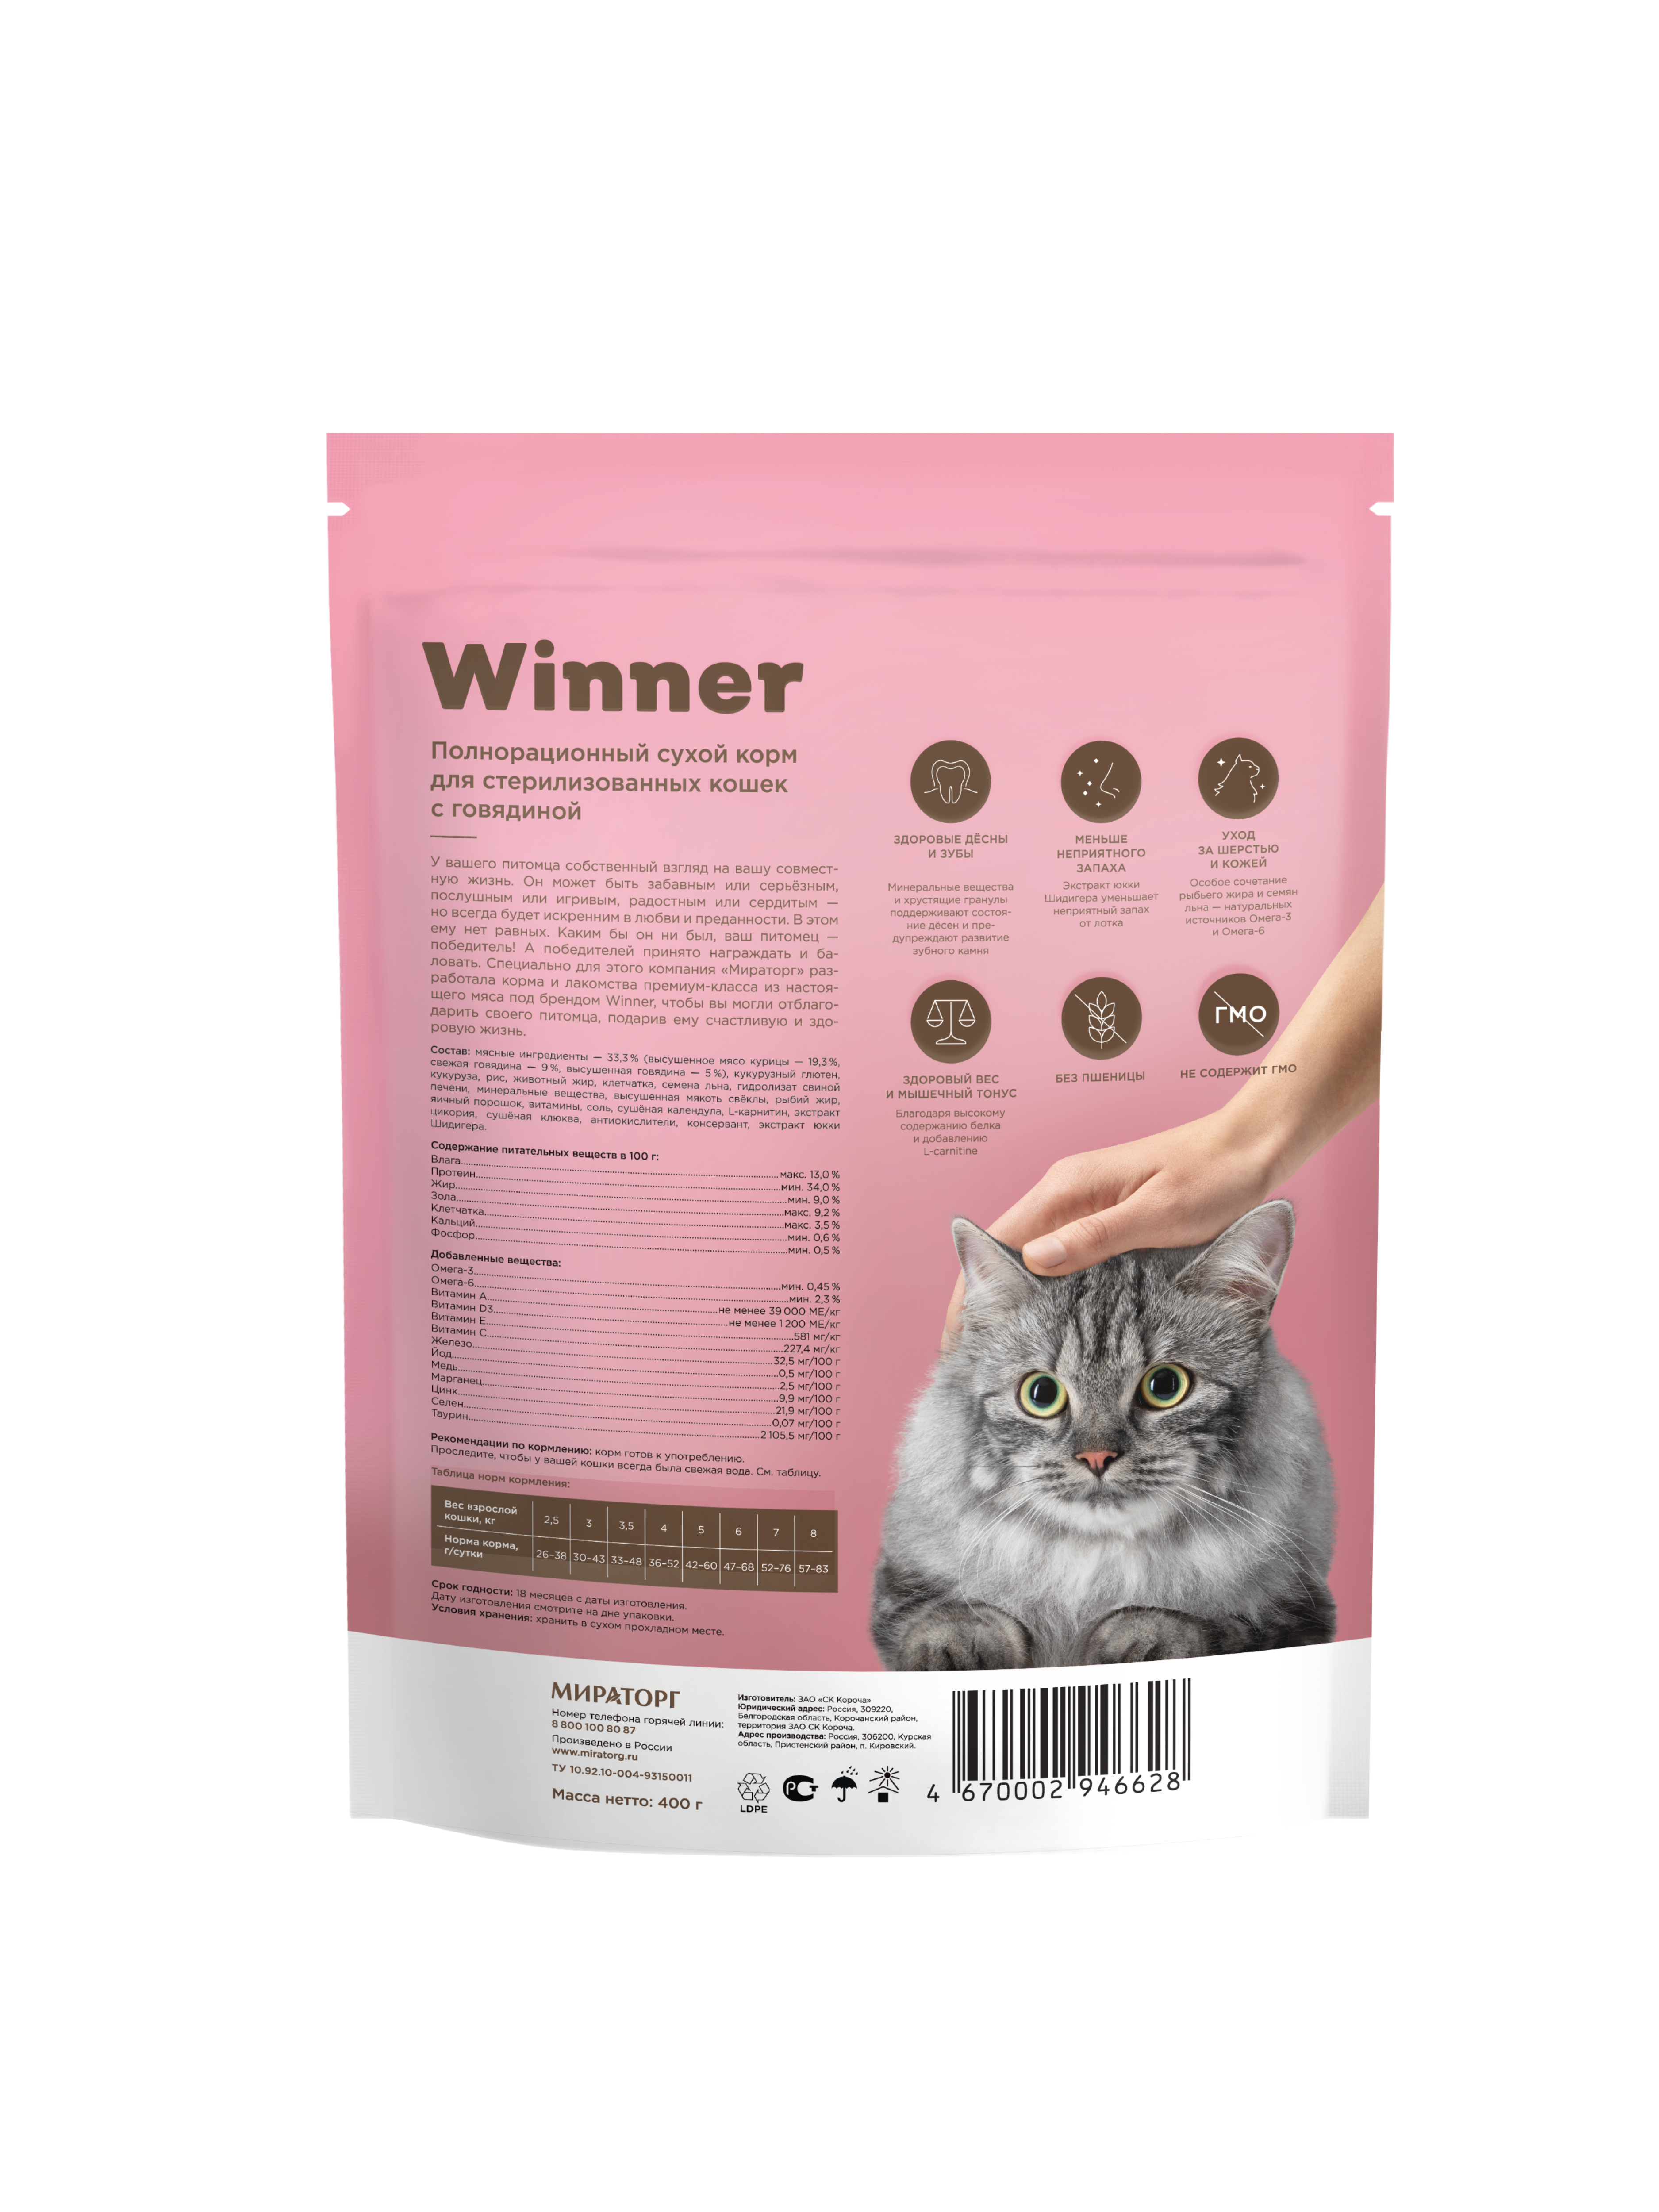 Сухой корм WINNER для стерилизованных кошек с говядиной, 400 гр.